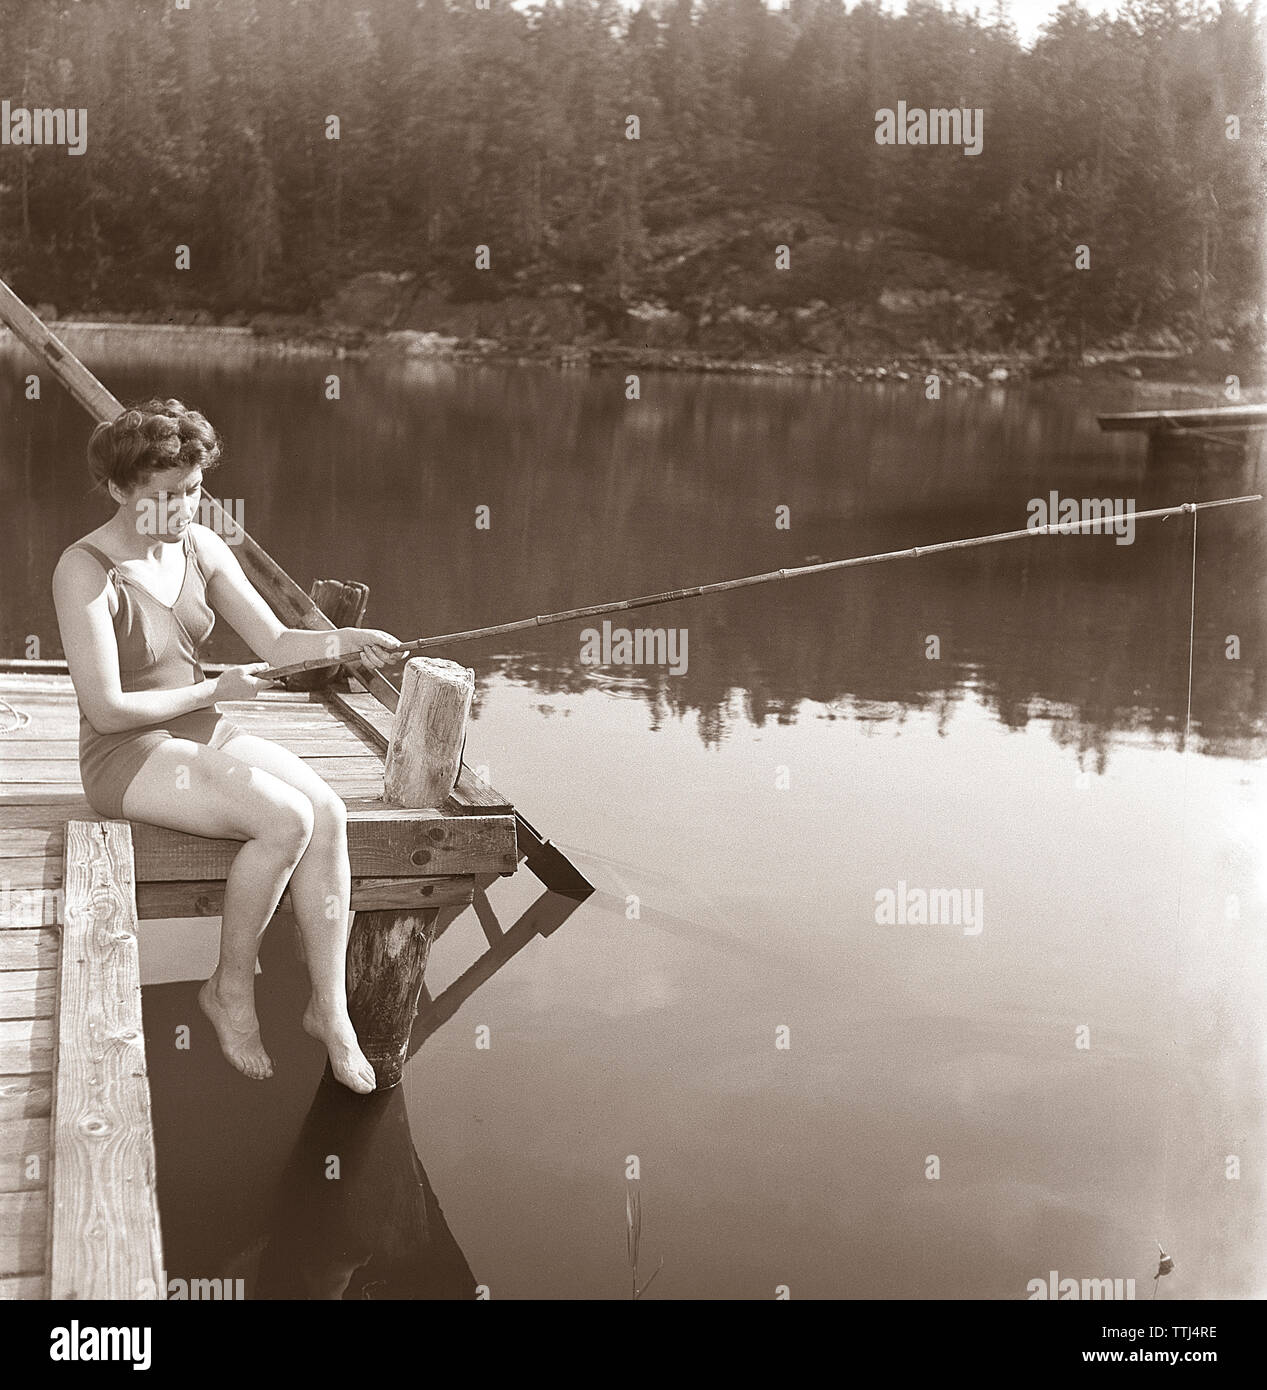 La pêche dans les années 1950. Une jeune femme portant un maillot de bain est la pêche. Kristoffersson ref K51-4 Suède 1945 Banque D'Images